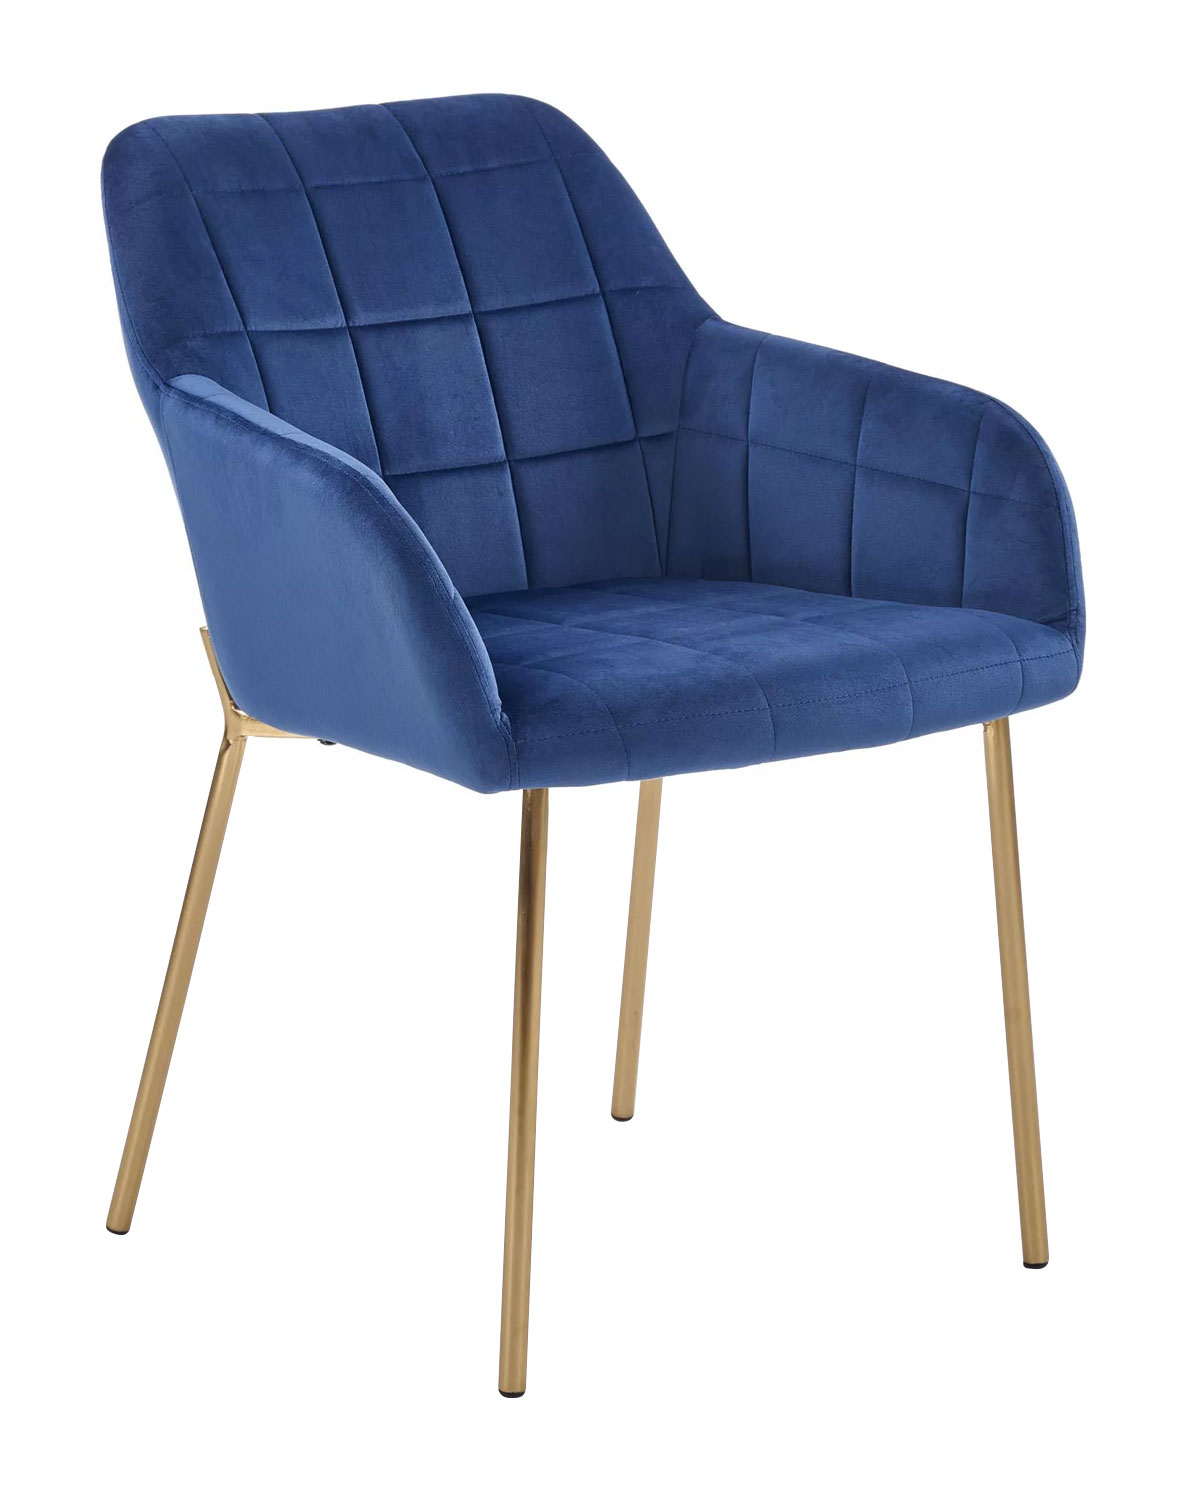 K306 fotelik niebieski, welwetowa tapicerka, przeszycia, złote nóżki